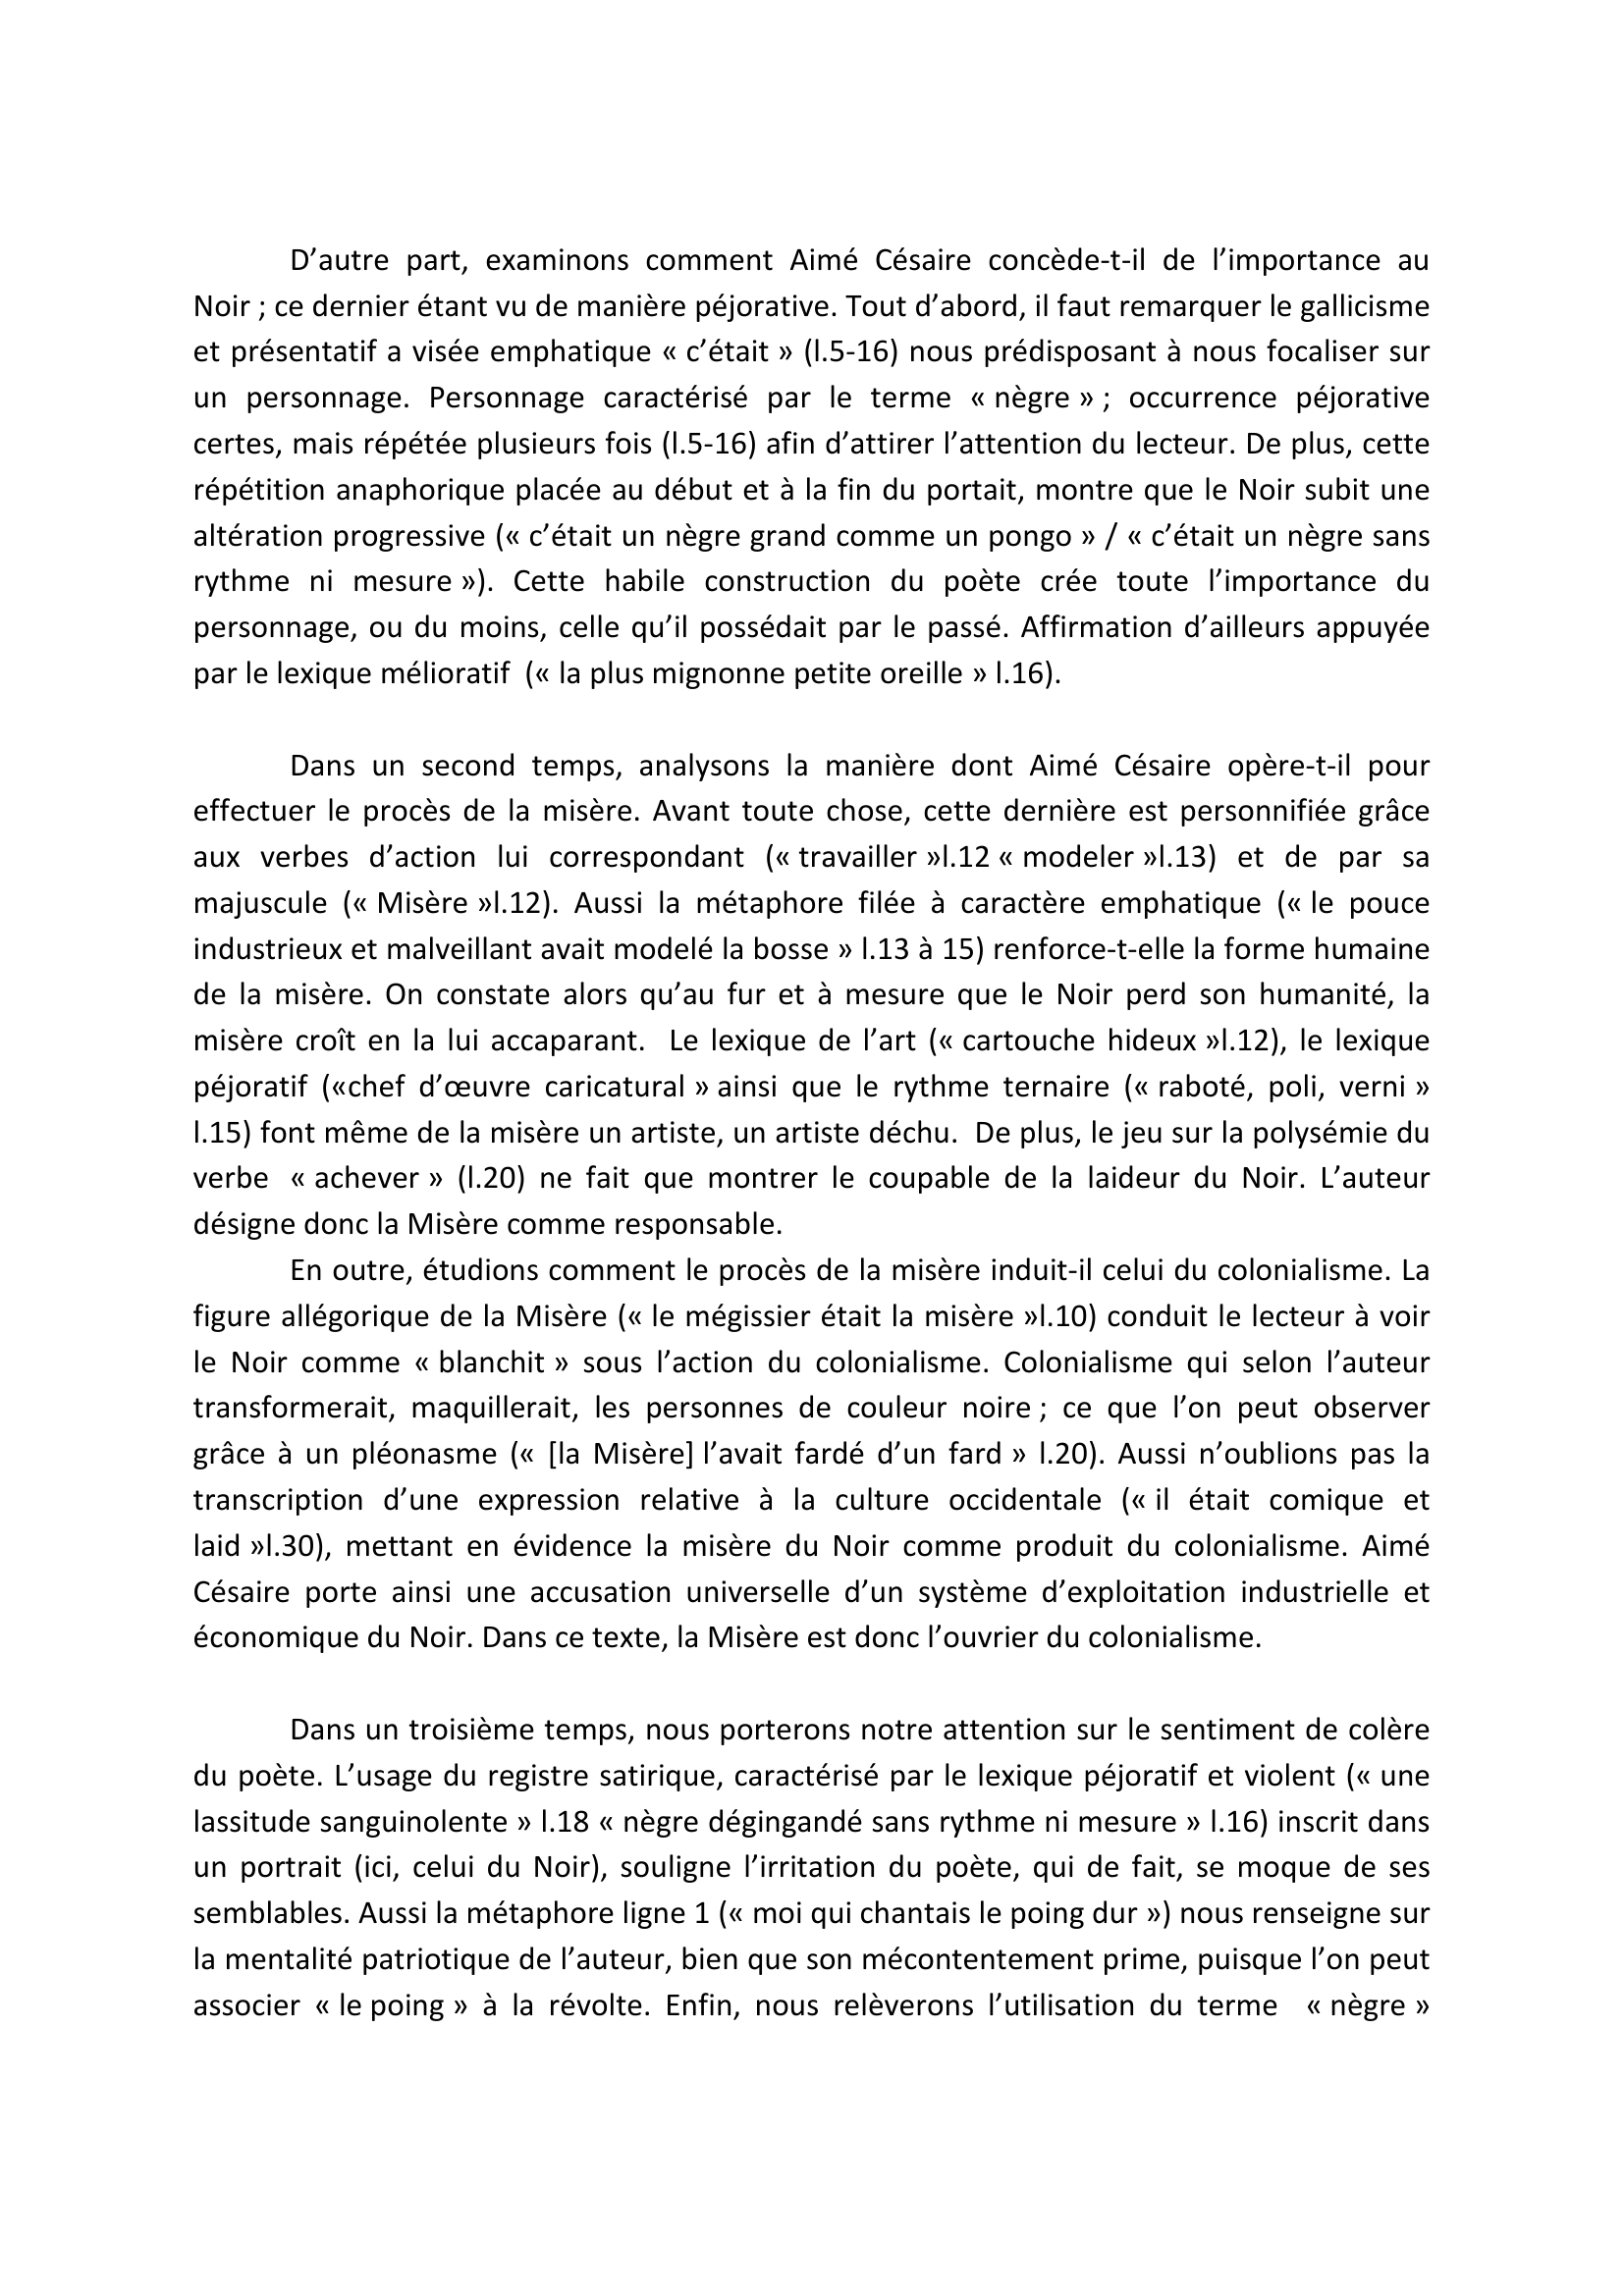 Prévisualisation du document Extrait de « Cahier d'un retour au pays natal. » (Aimé Césaire). Forme : commentaire composé.